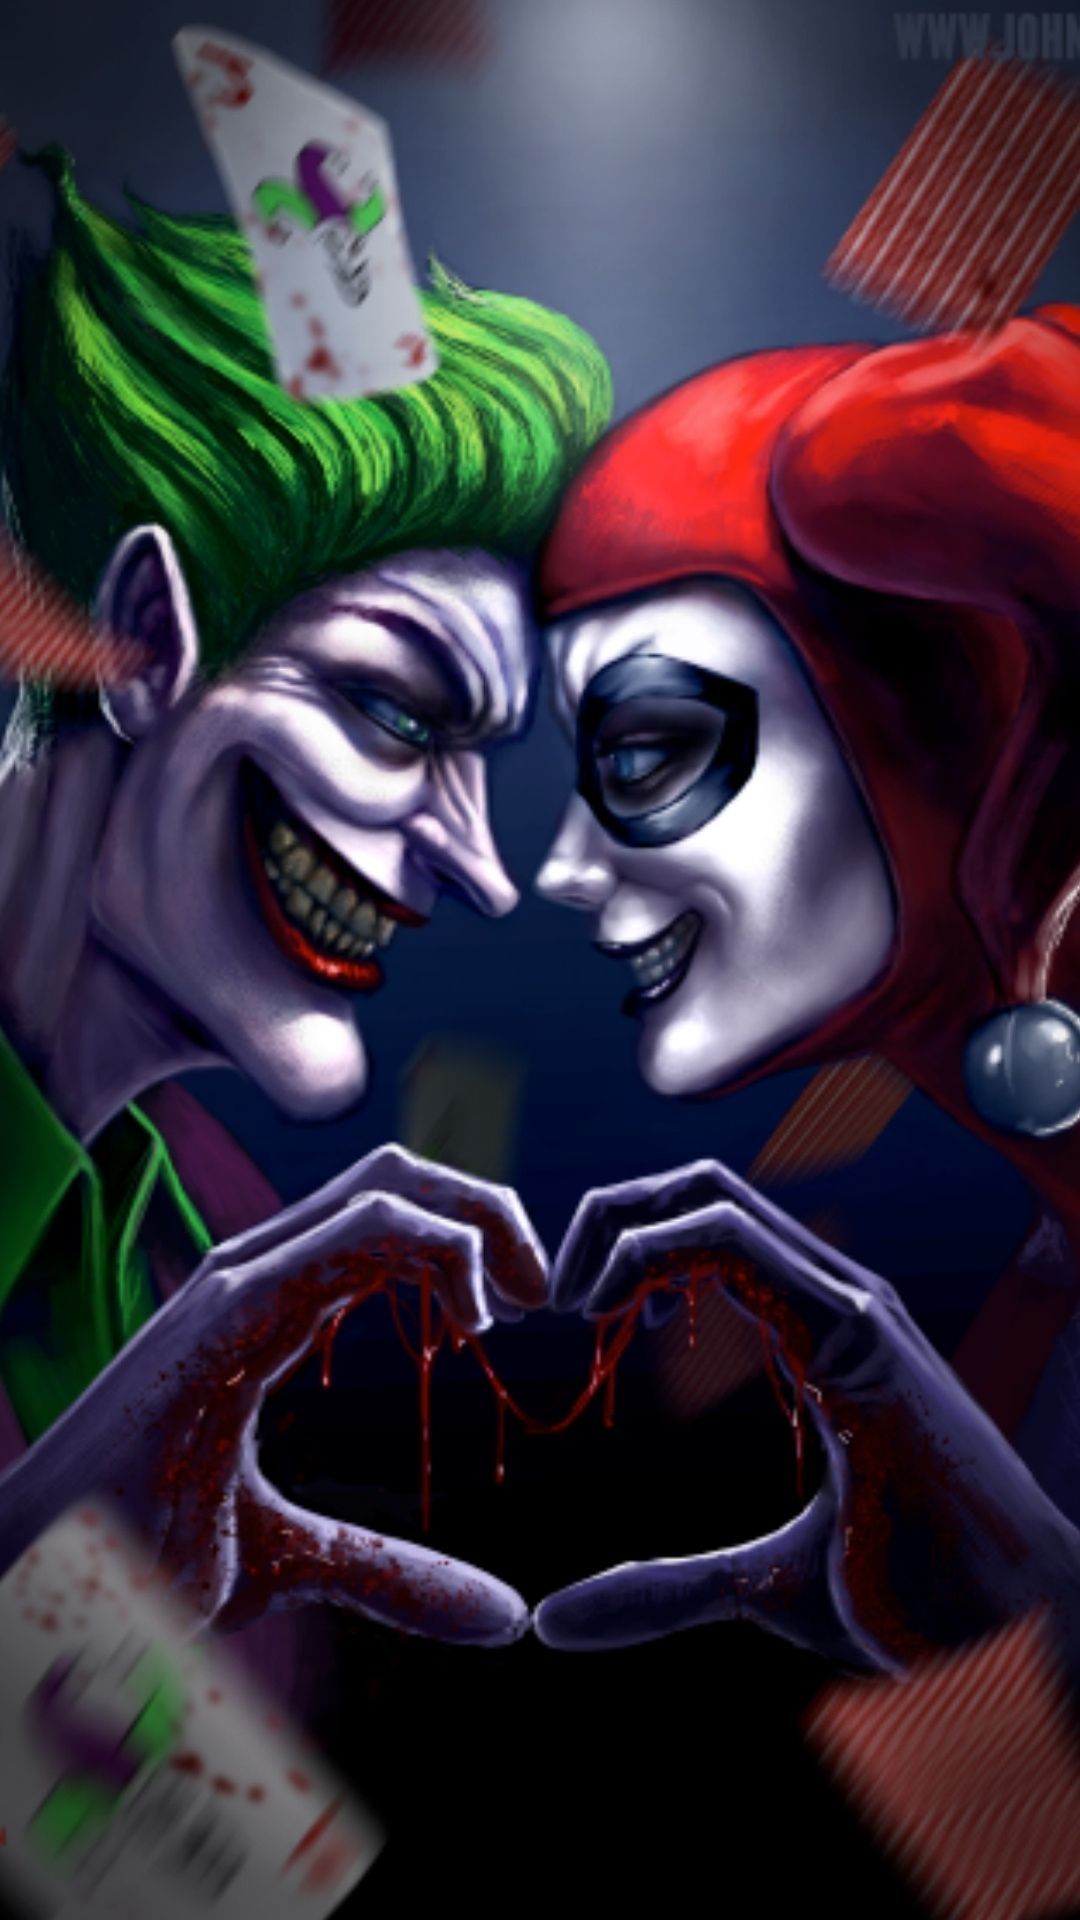 joker and harley quinn love story